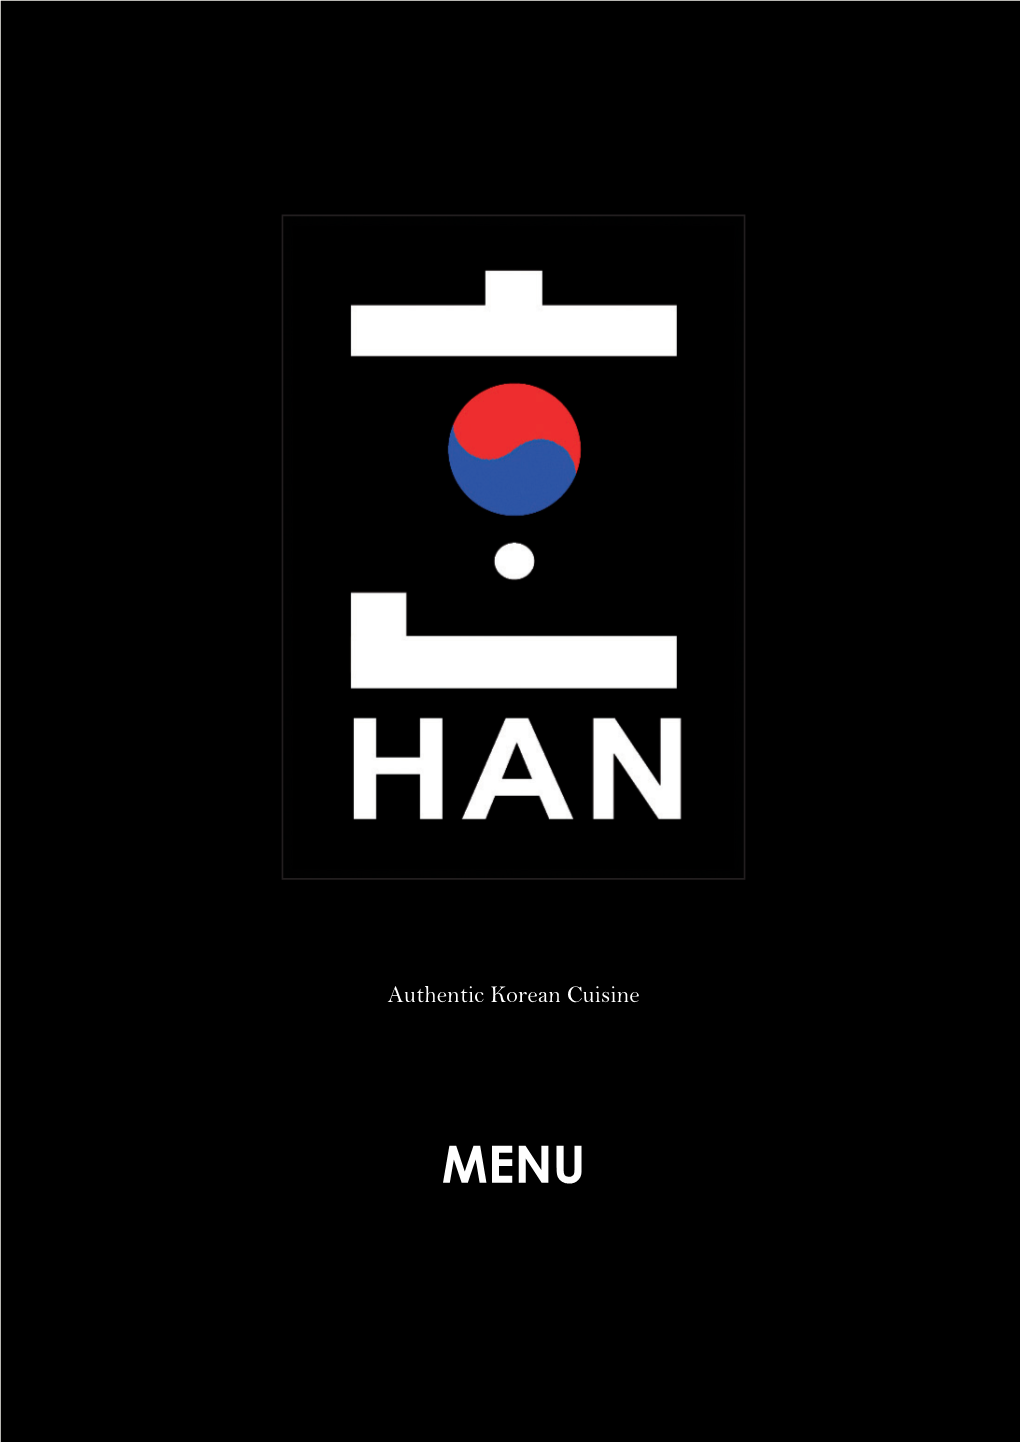 Authentic Korean Cuisine